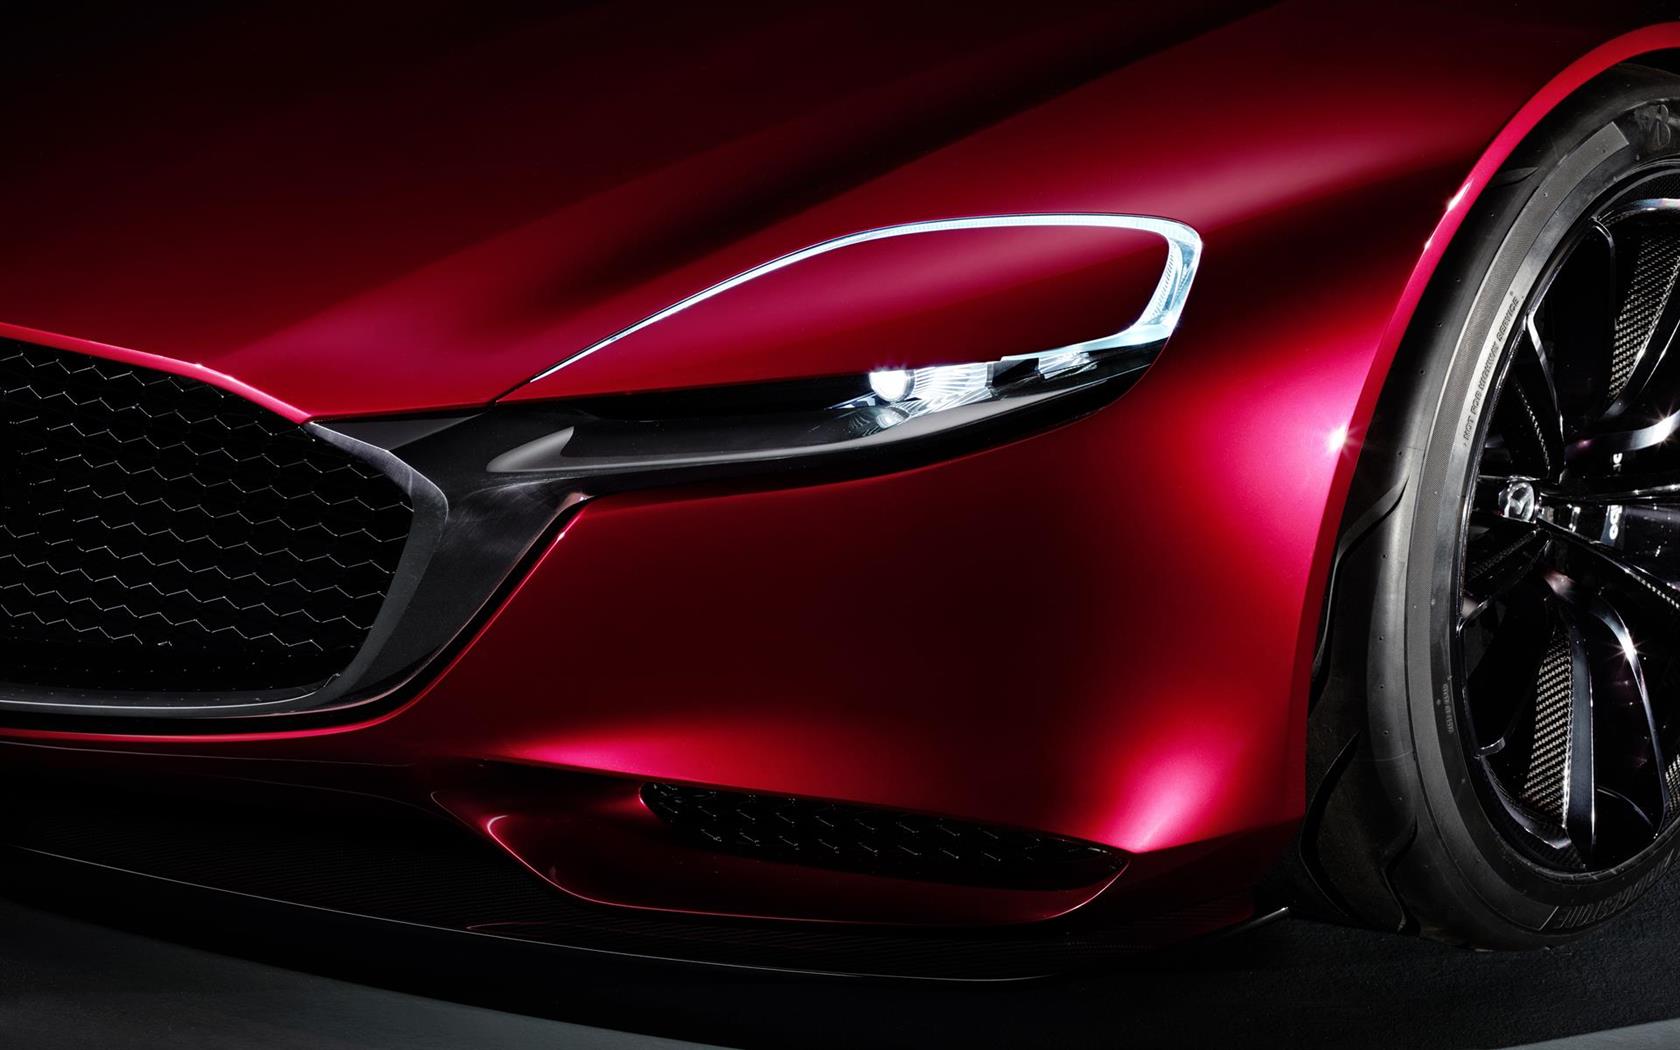 2015 Mazda RX-VISION Concept